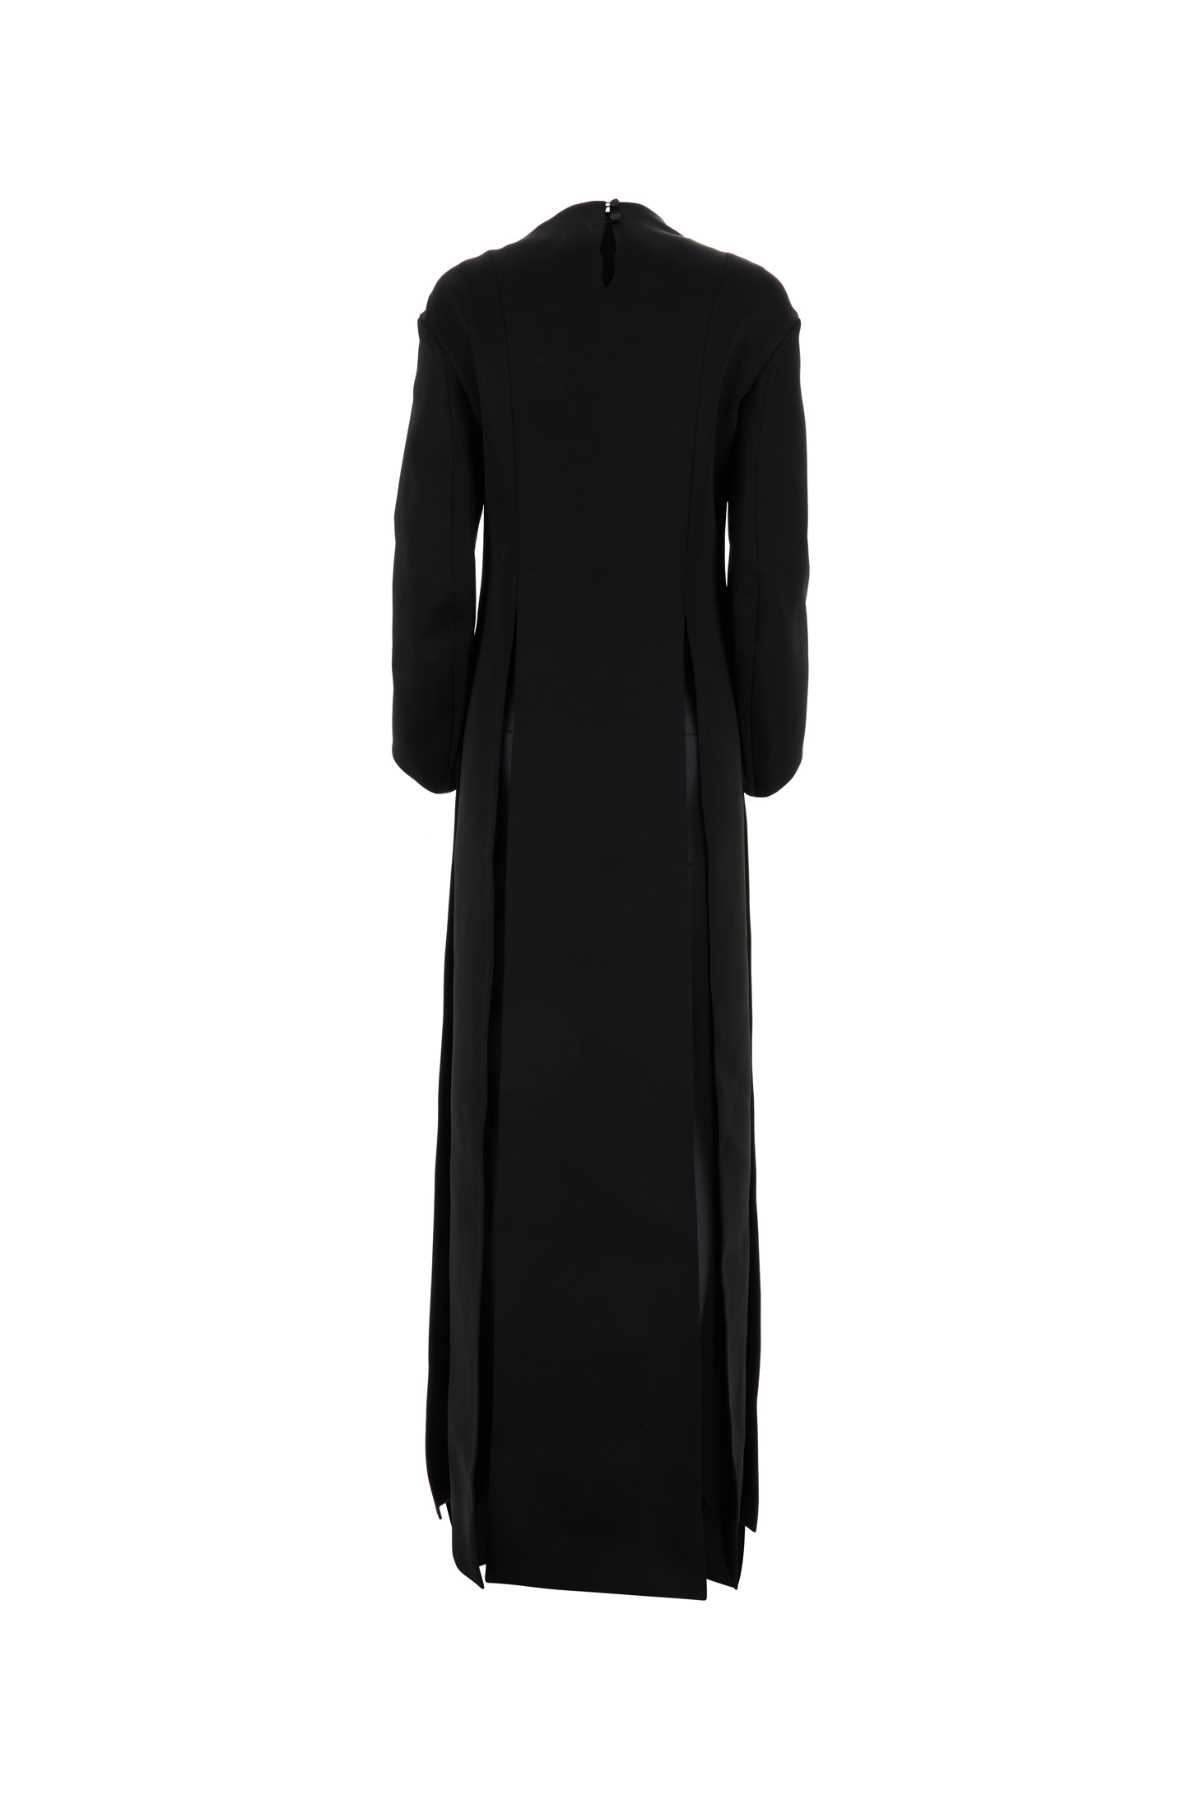 Shop Khaite Black Acetate Blend The Clete Long Dress